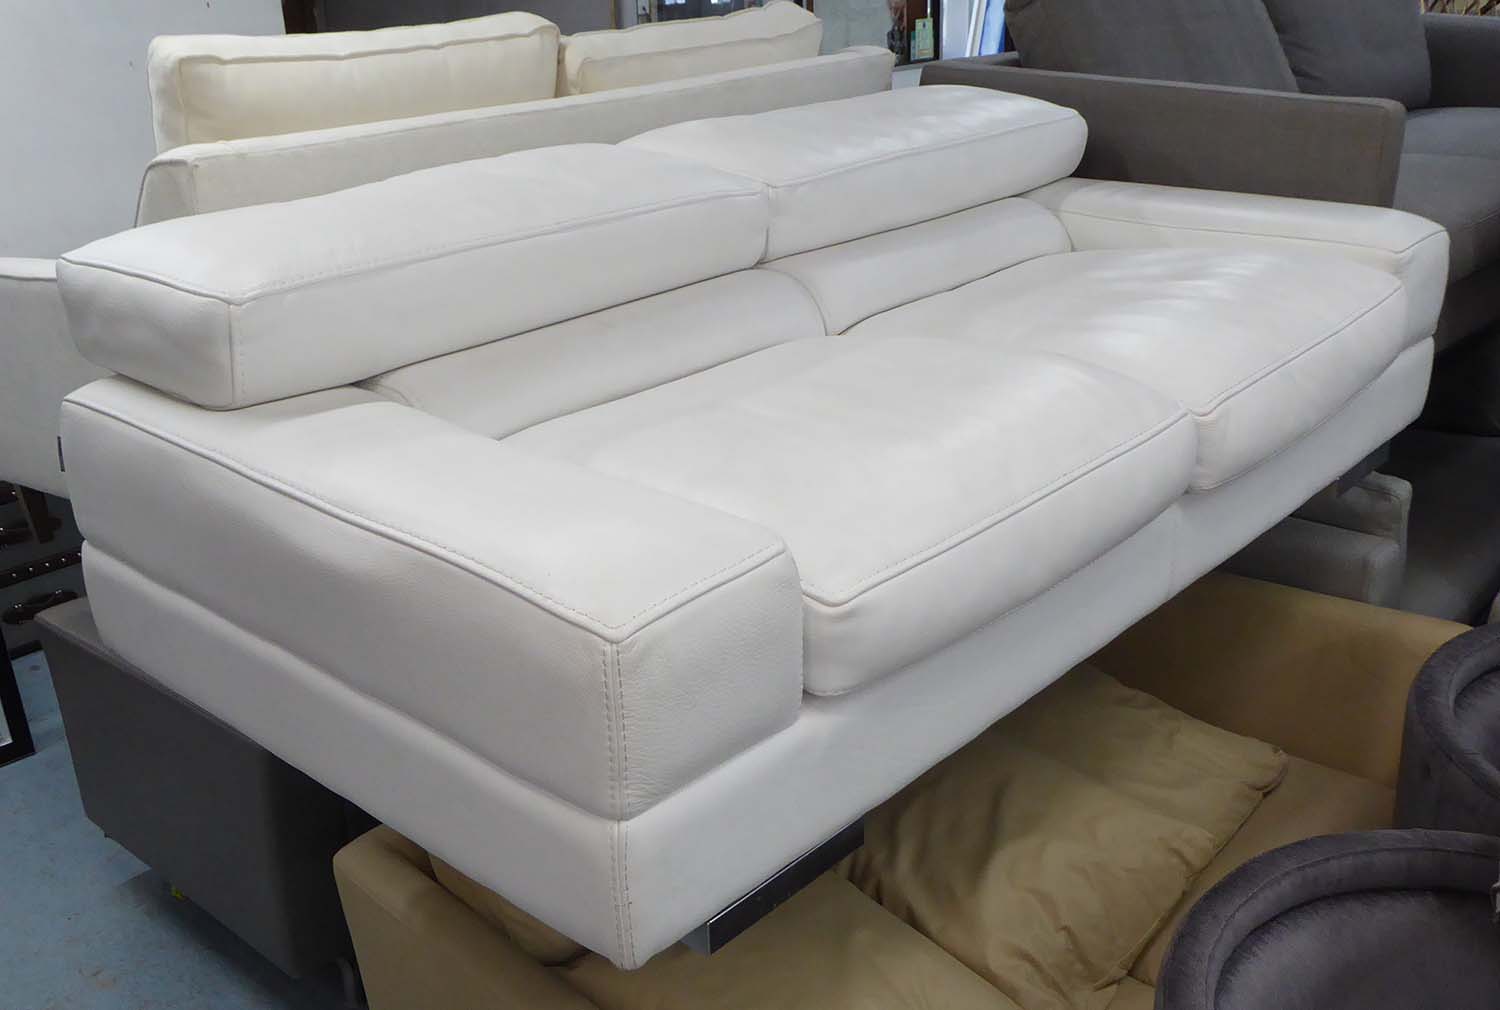 Roche Bobois Sofa In A White Leather